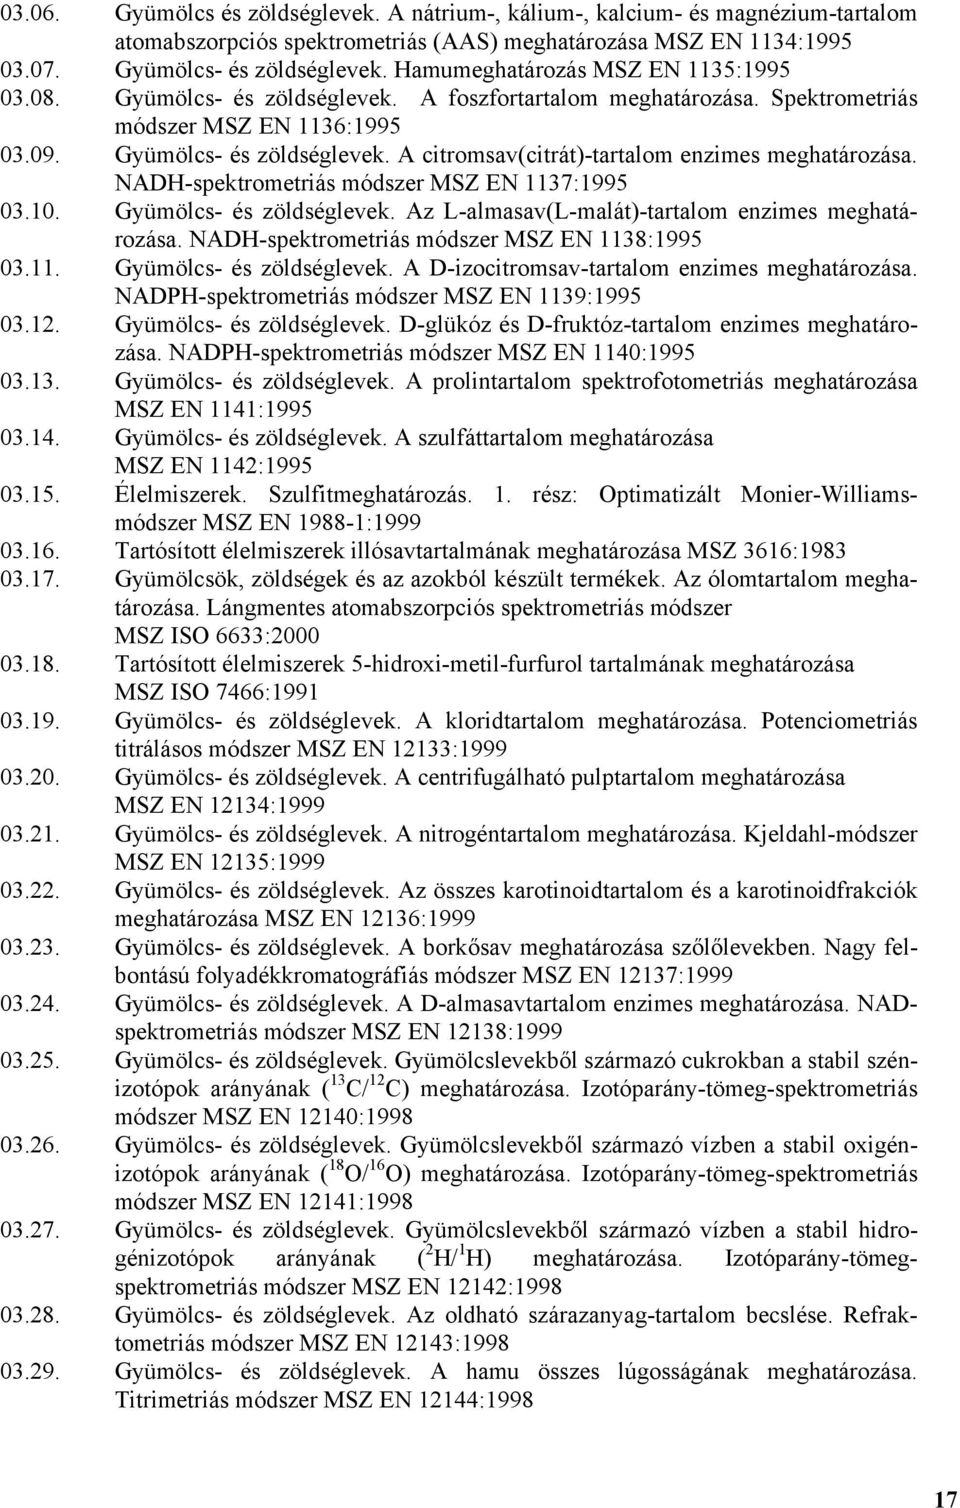 NADH-spektrometriás módszer MSZ EN 1137:1995 03.10. Gyümölcs- és zöldséglevek. Az L-almasav(L-malát)-tartalom enzimes meghatározása. NADH-spektrometriás módszer MSZ EN 1138:1995 03.11. Gyümölcs- és zöldséglevek. A D-izocitromsav-tartalom enzimes meghatározása.